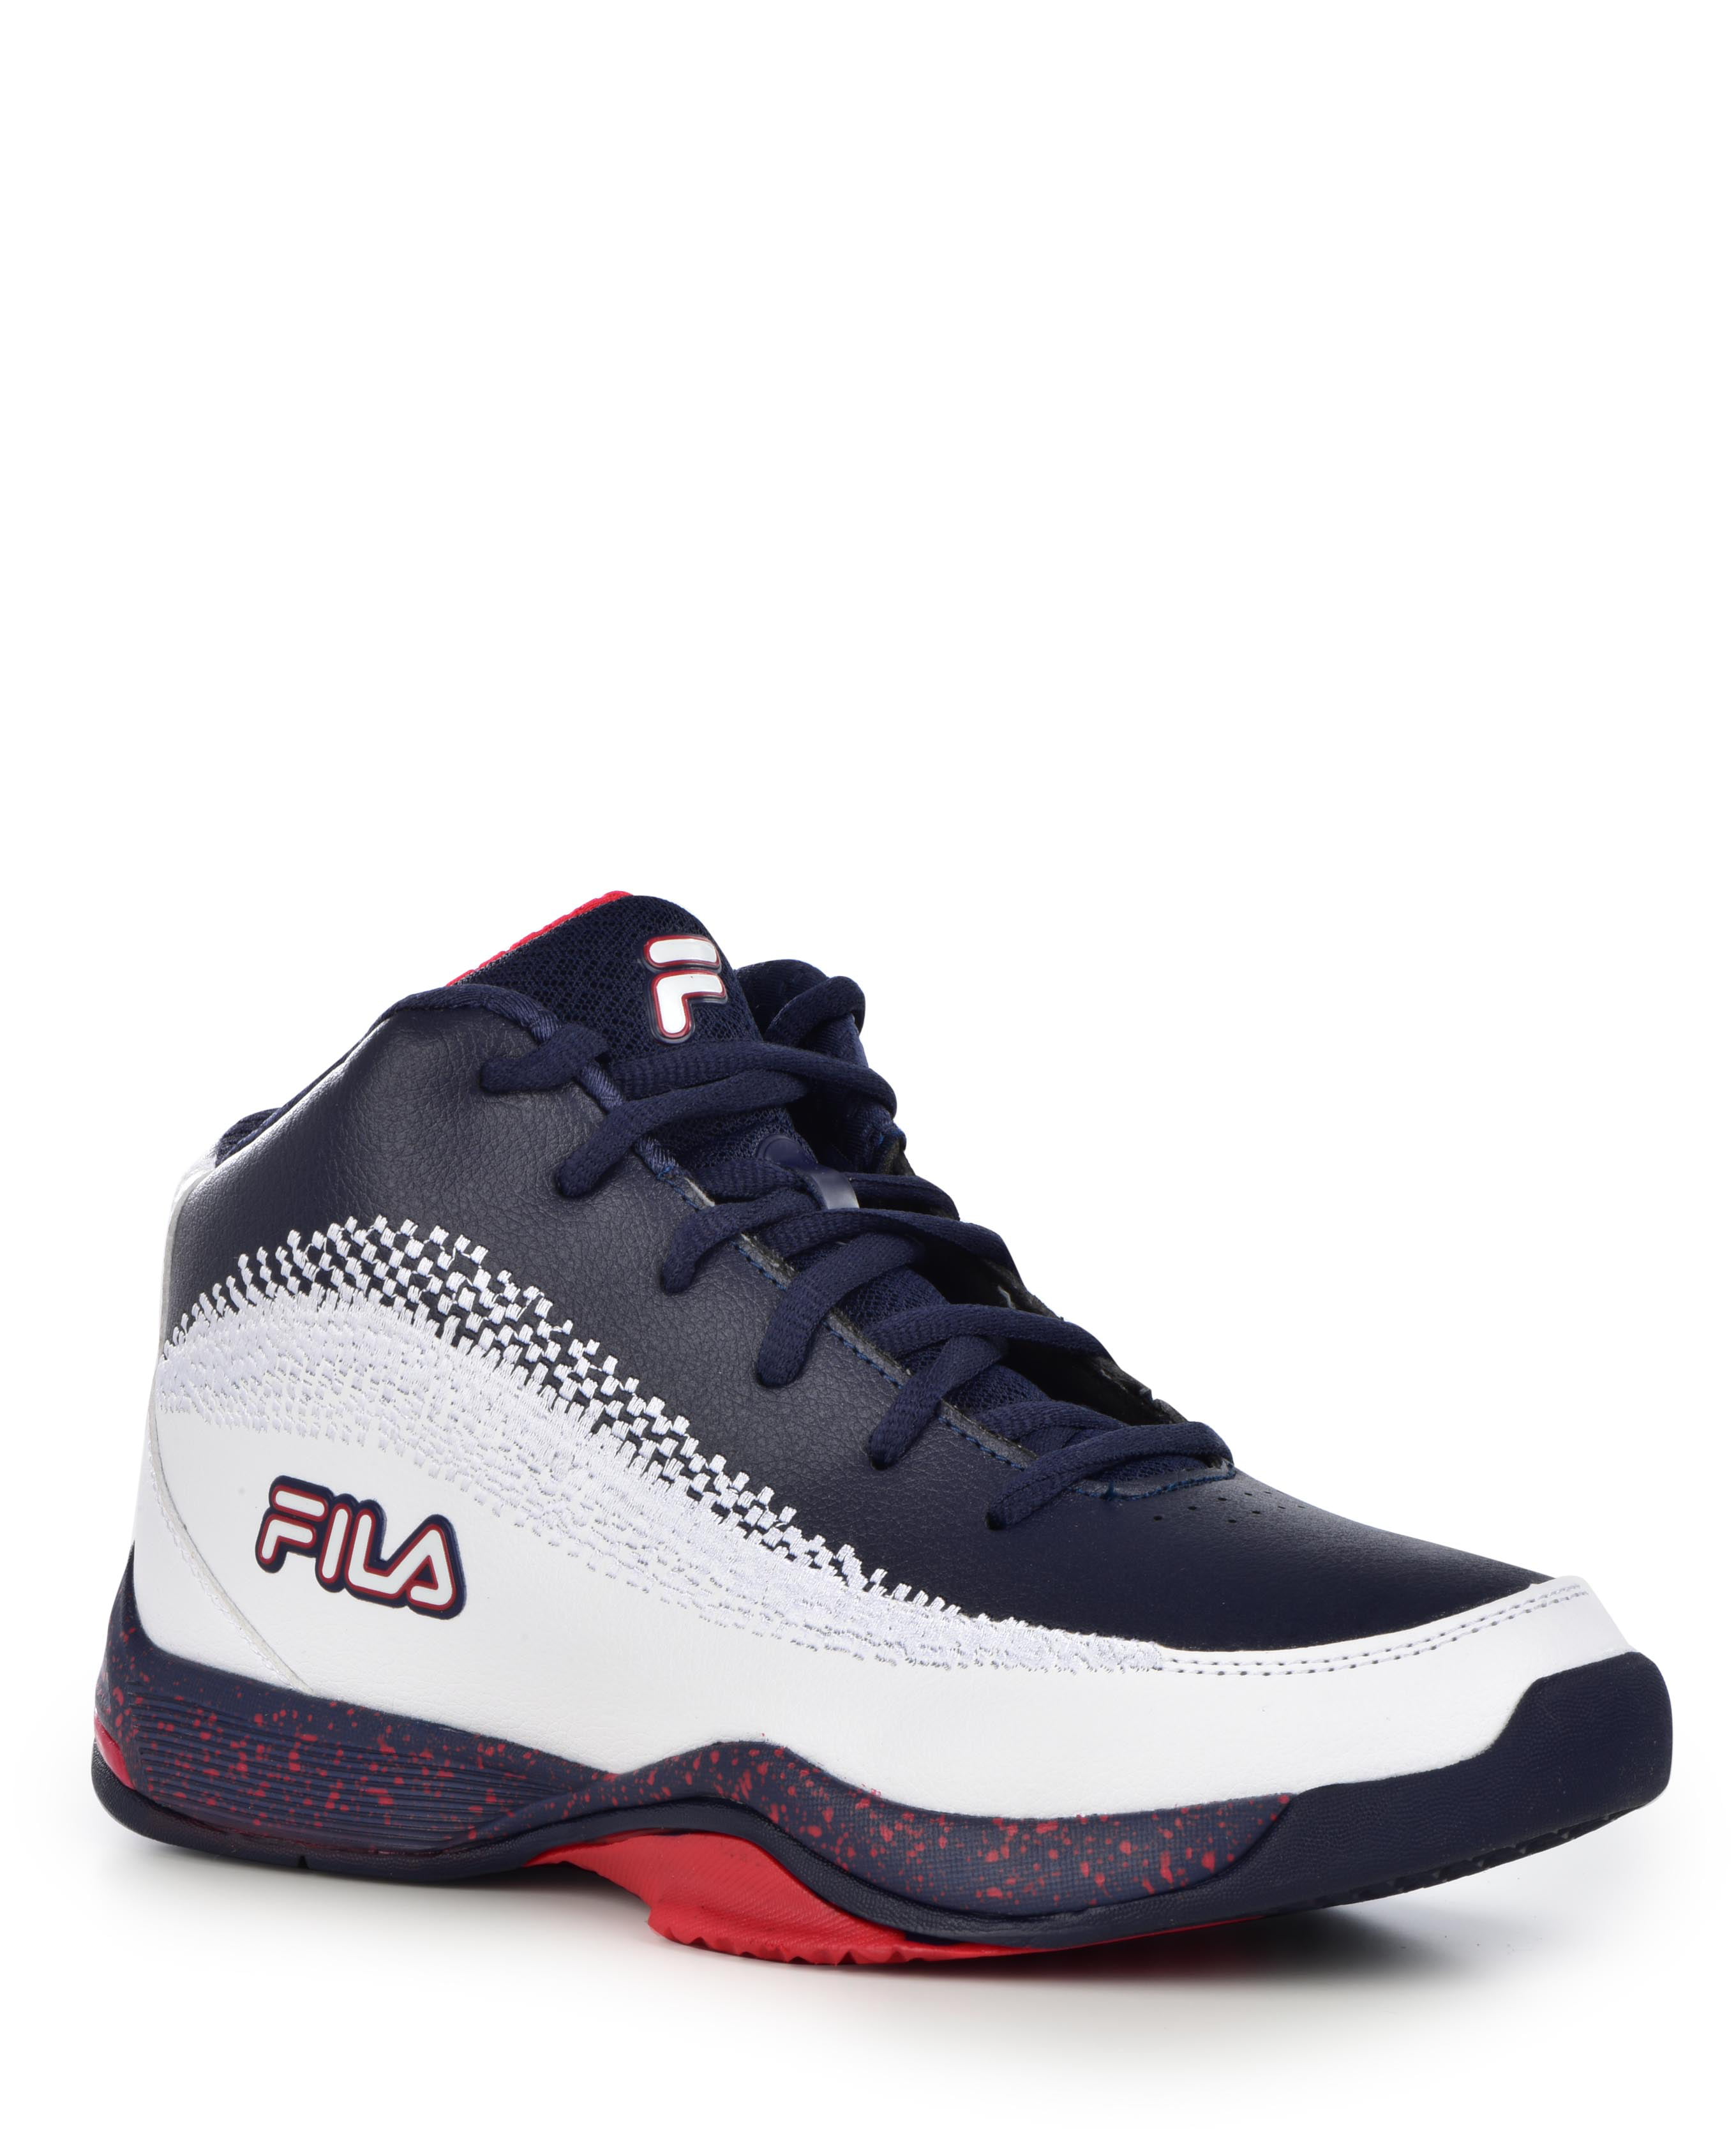 FILA - Fila Men's Contingent 4 Basketball Sneaker - Walmart.com ...